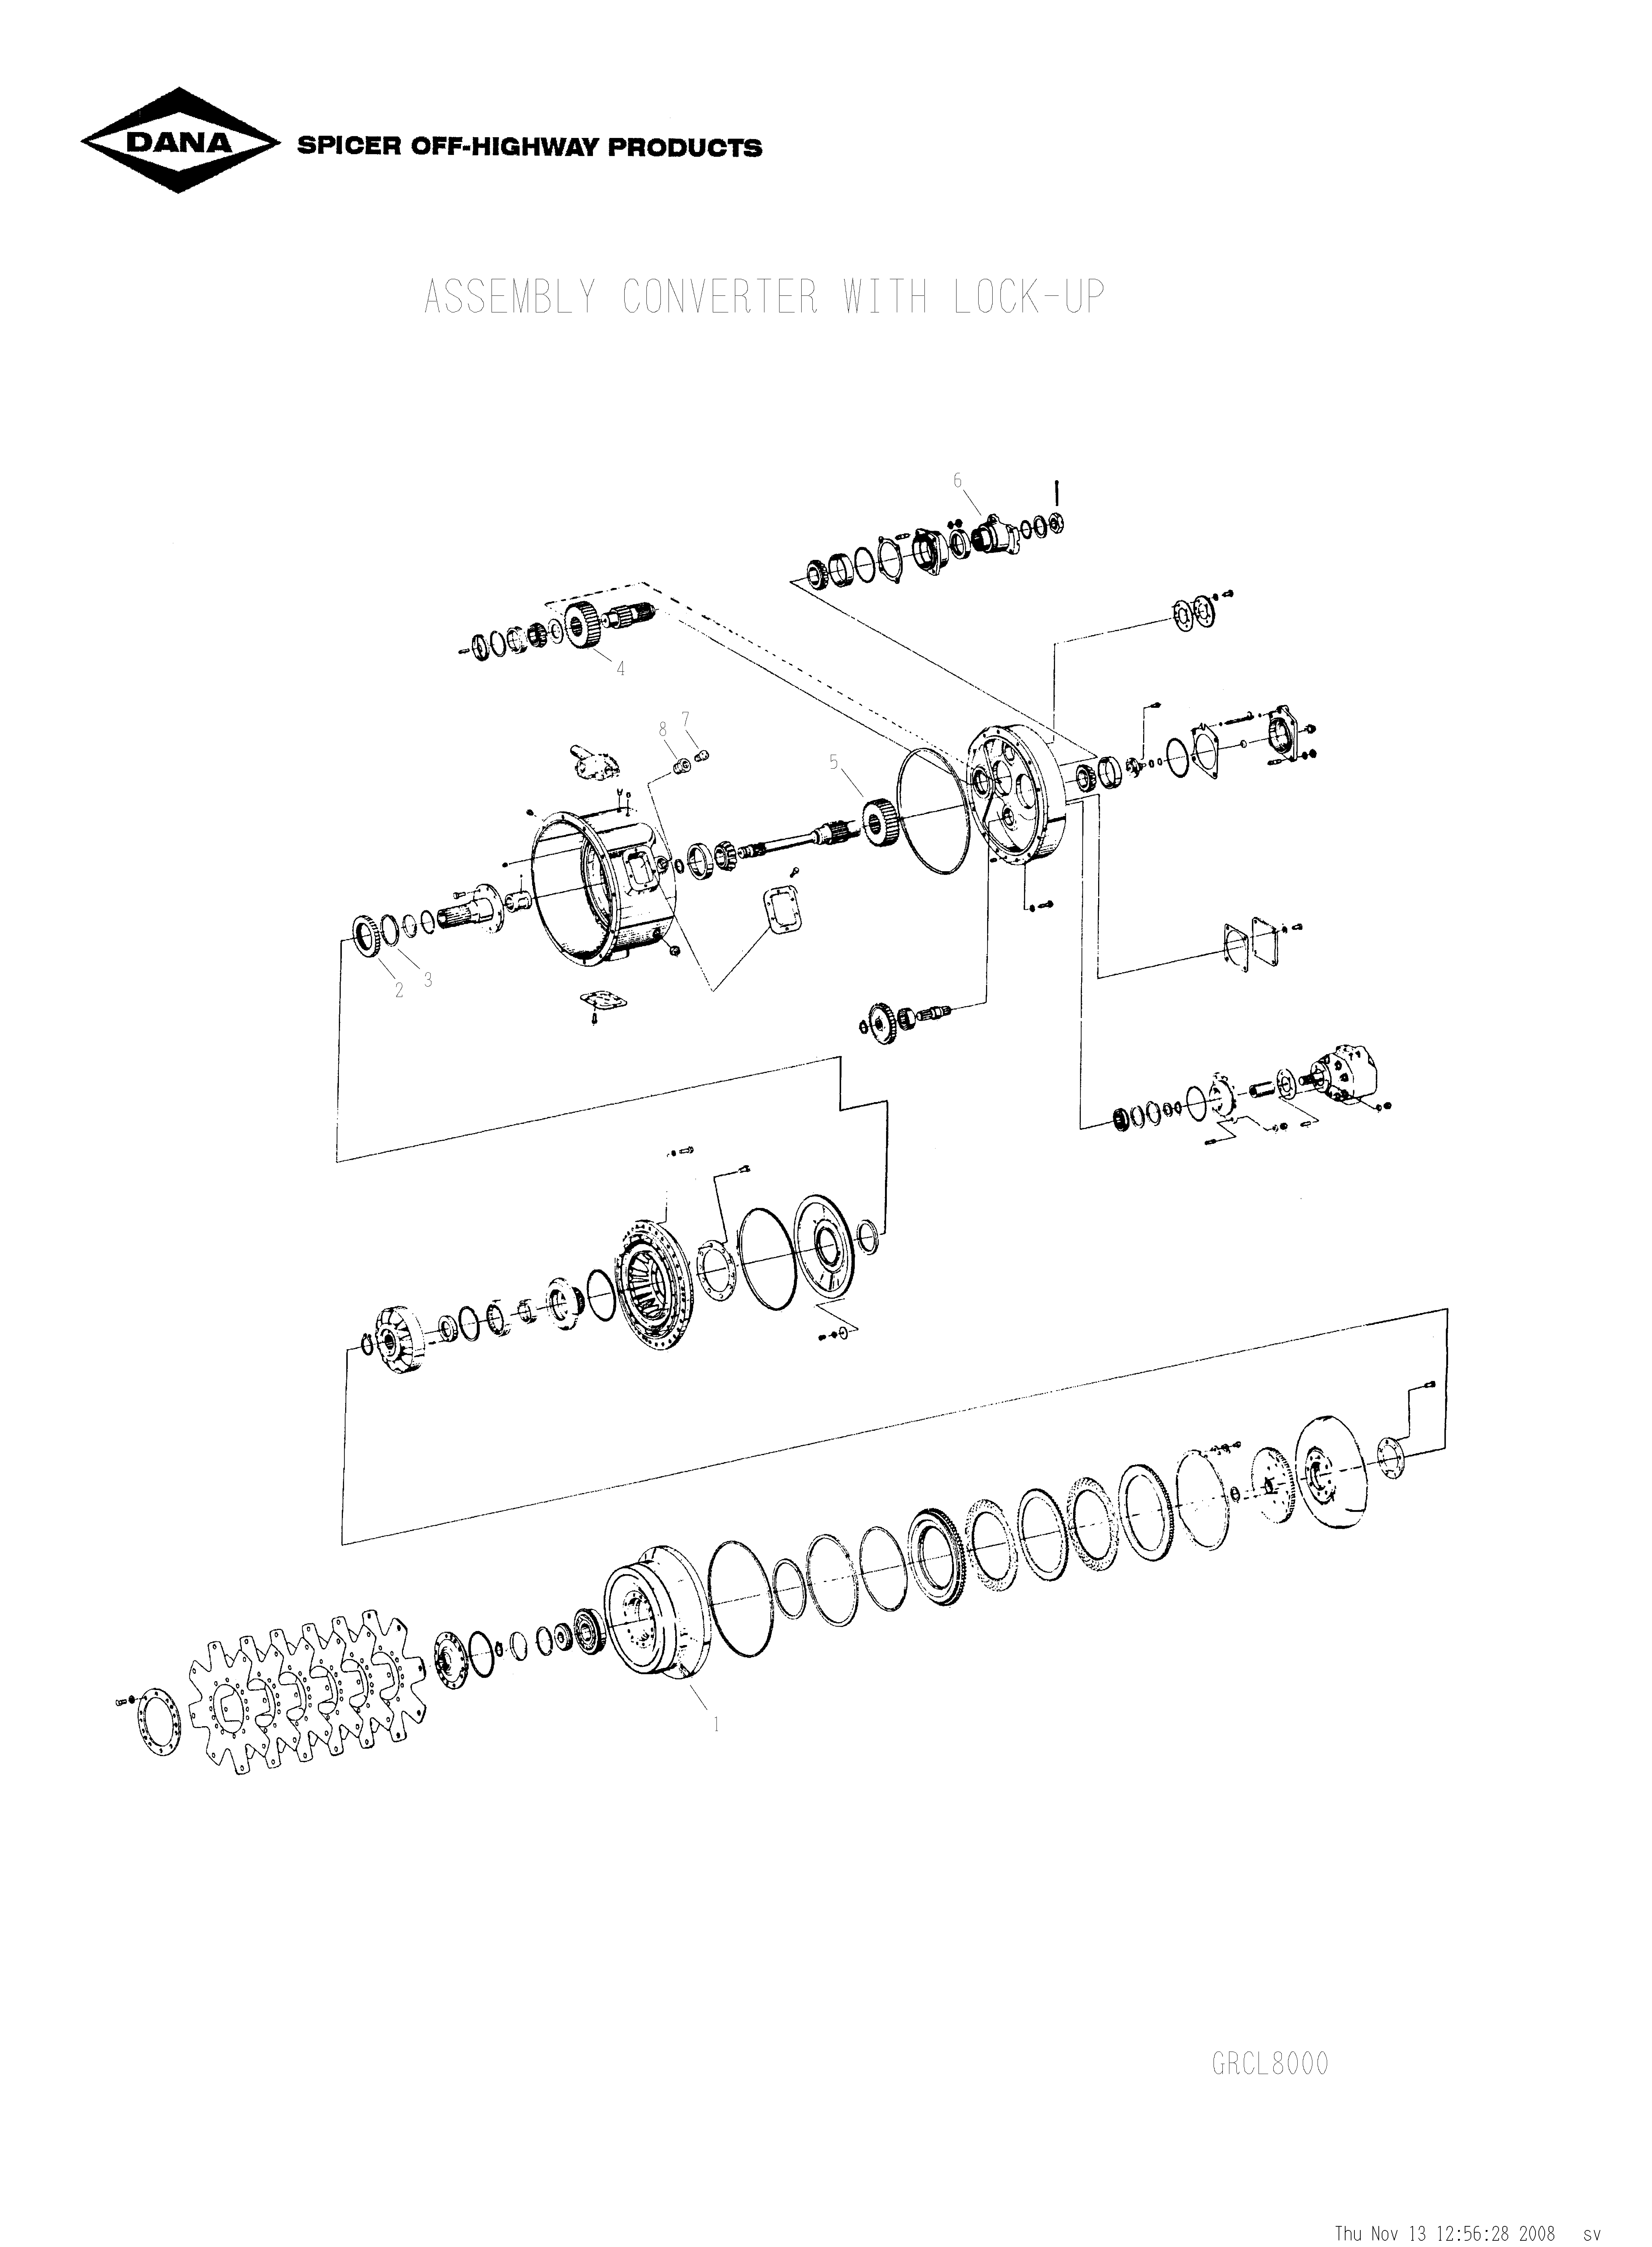 drawing for OLDENBURG LAKESHORE UV401137 - SPEED SENSOR KIT (figure 2)